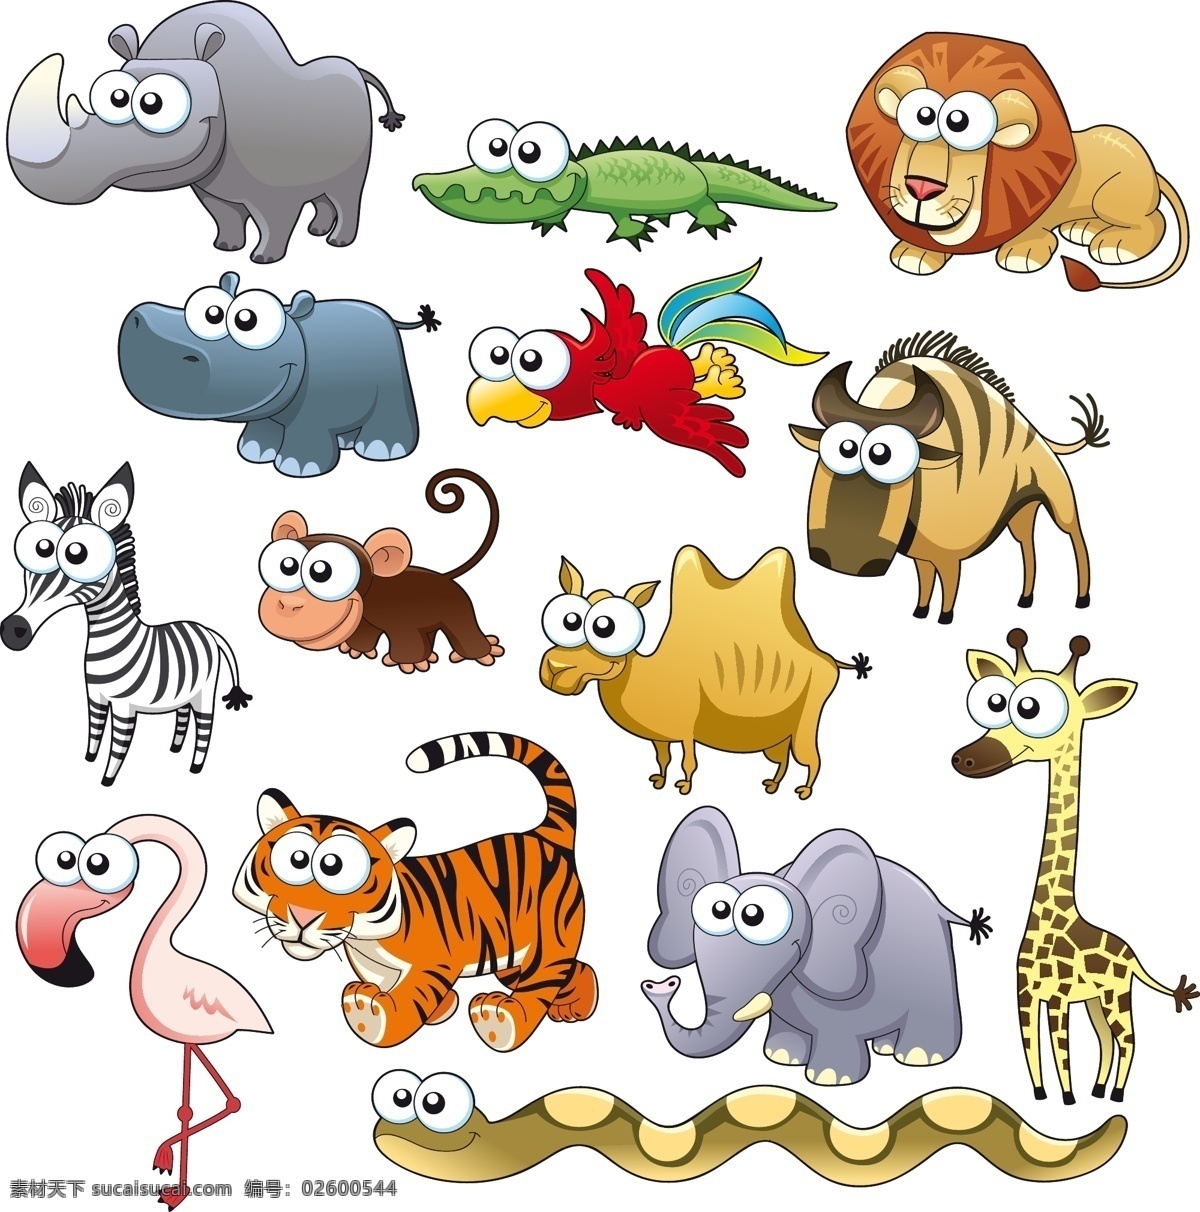 可爱 的卡 通 动物图片 可爱动物 大眼动物 小鸡 大象 长颈鹿 斑马 矢量 高清图片